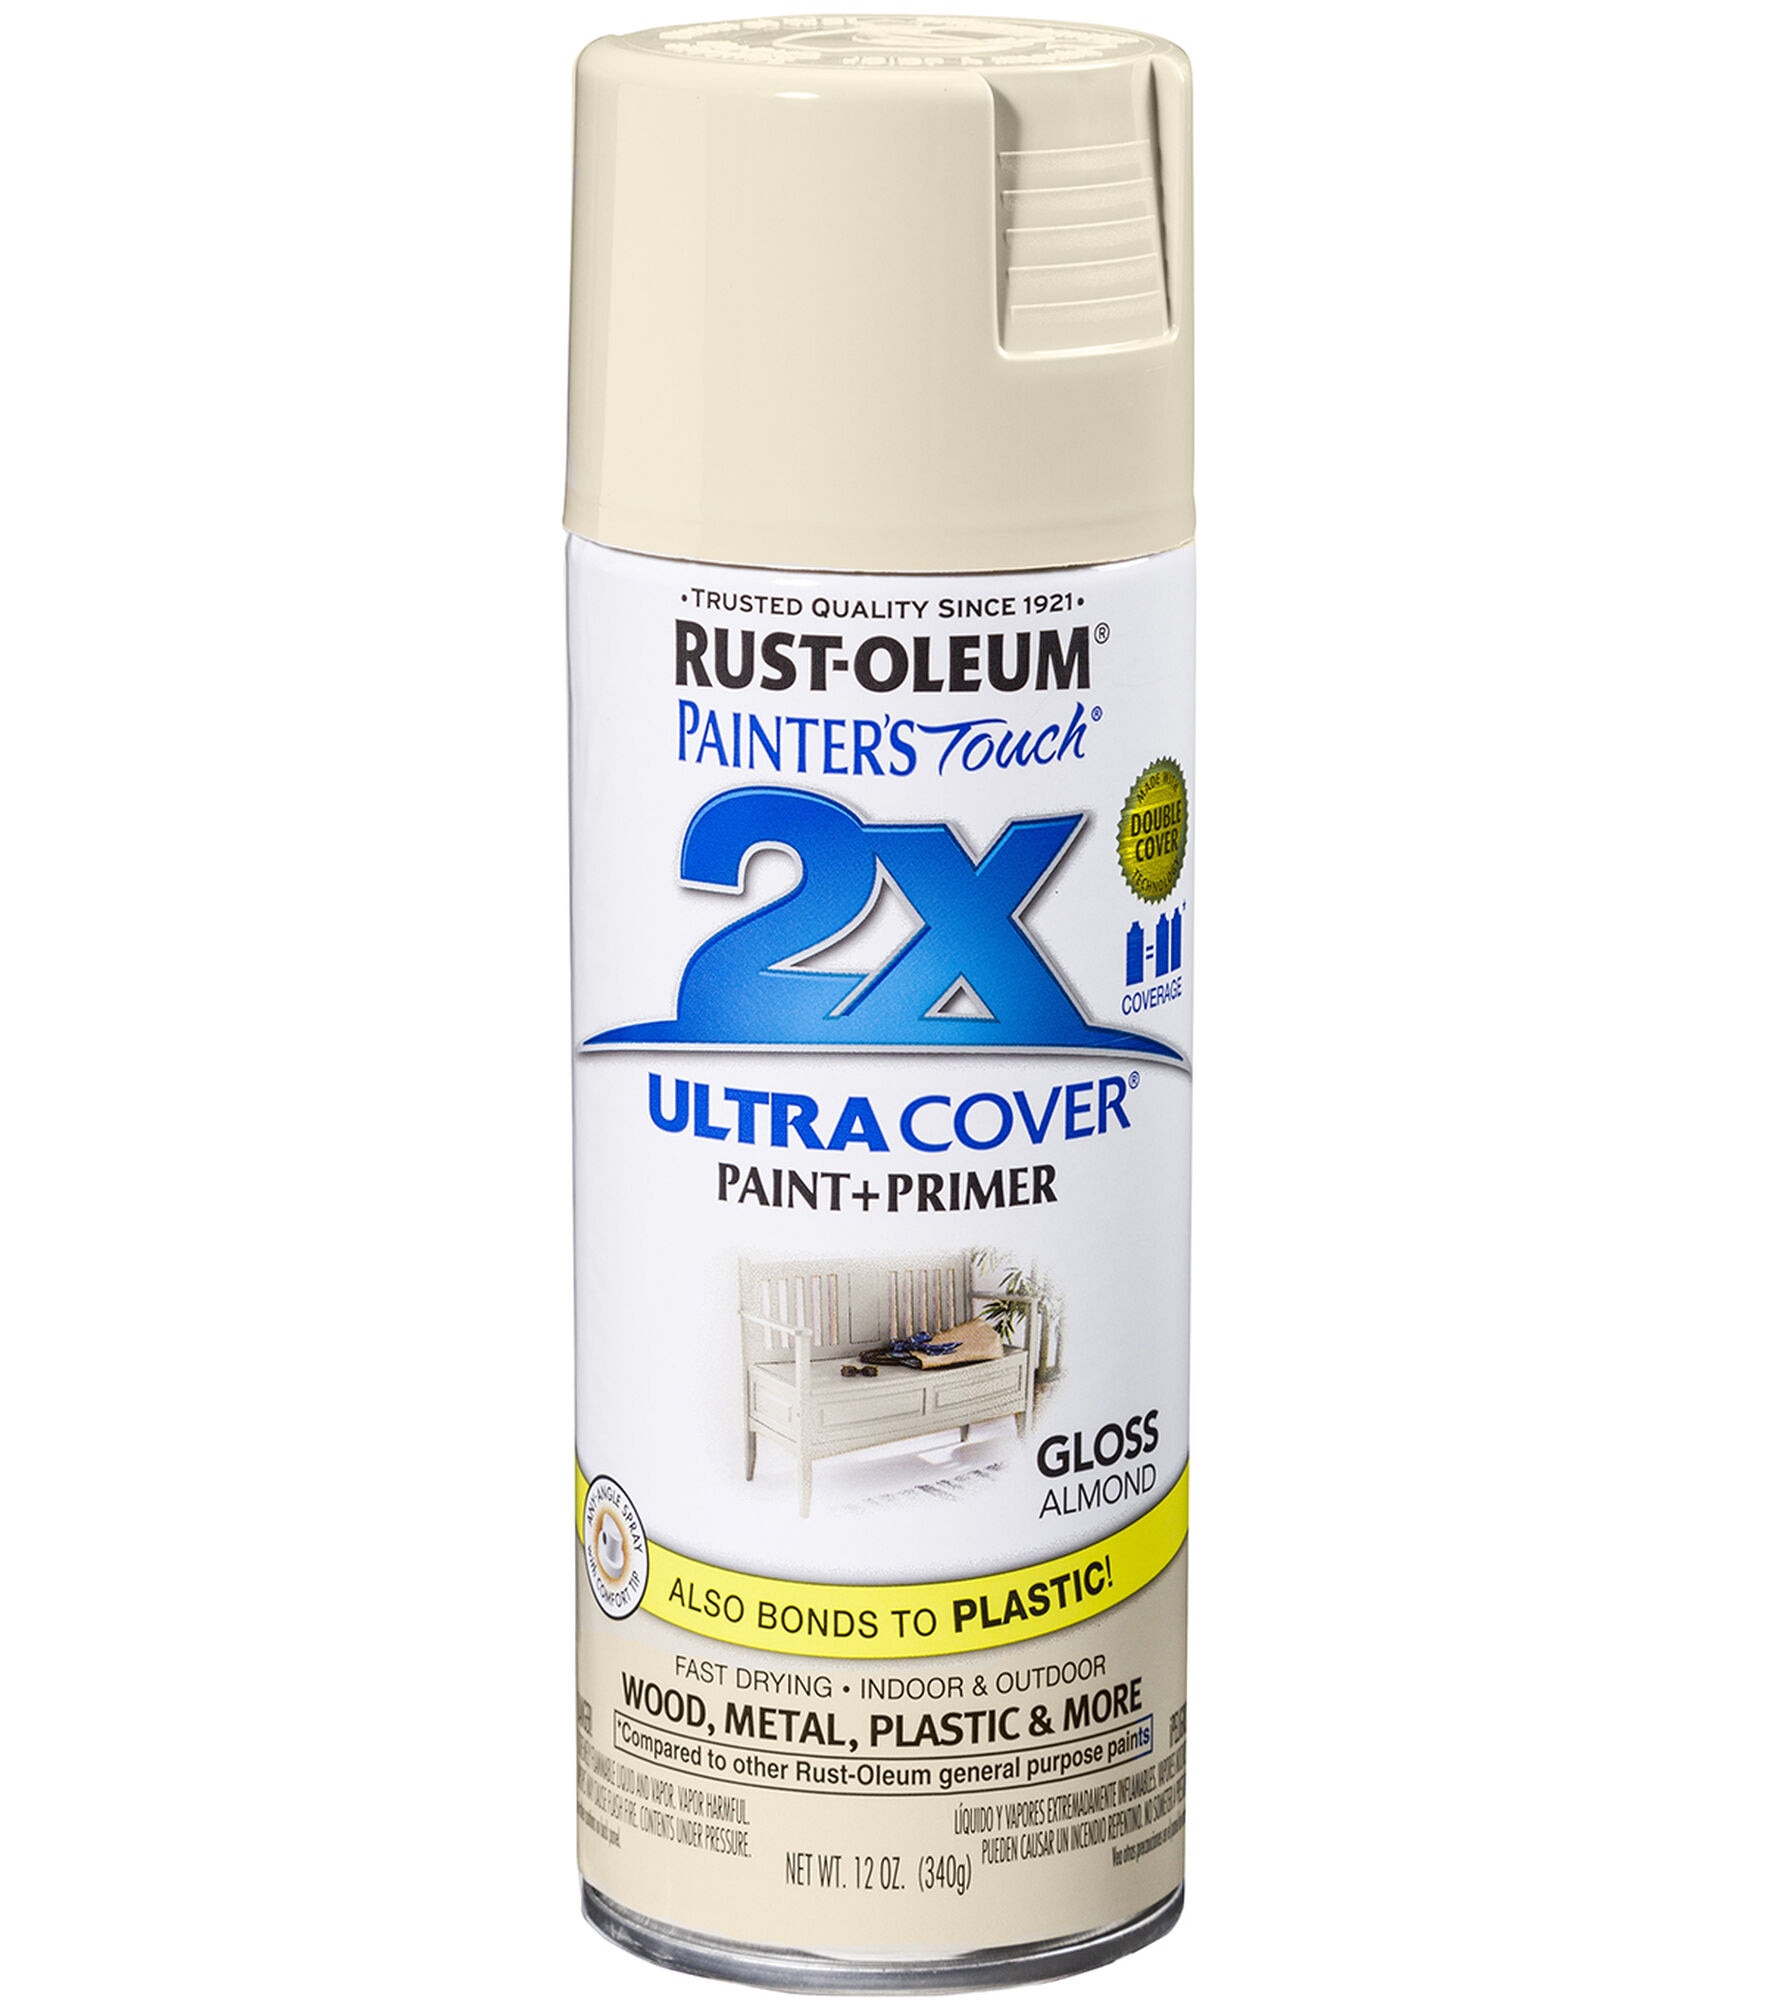 Rustoleum 2x Ultra Cover Paint+Primer Results - Styrene Plastic 